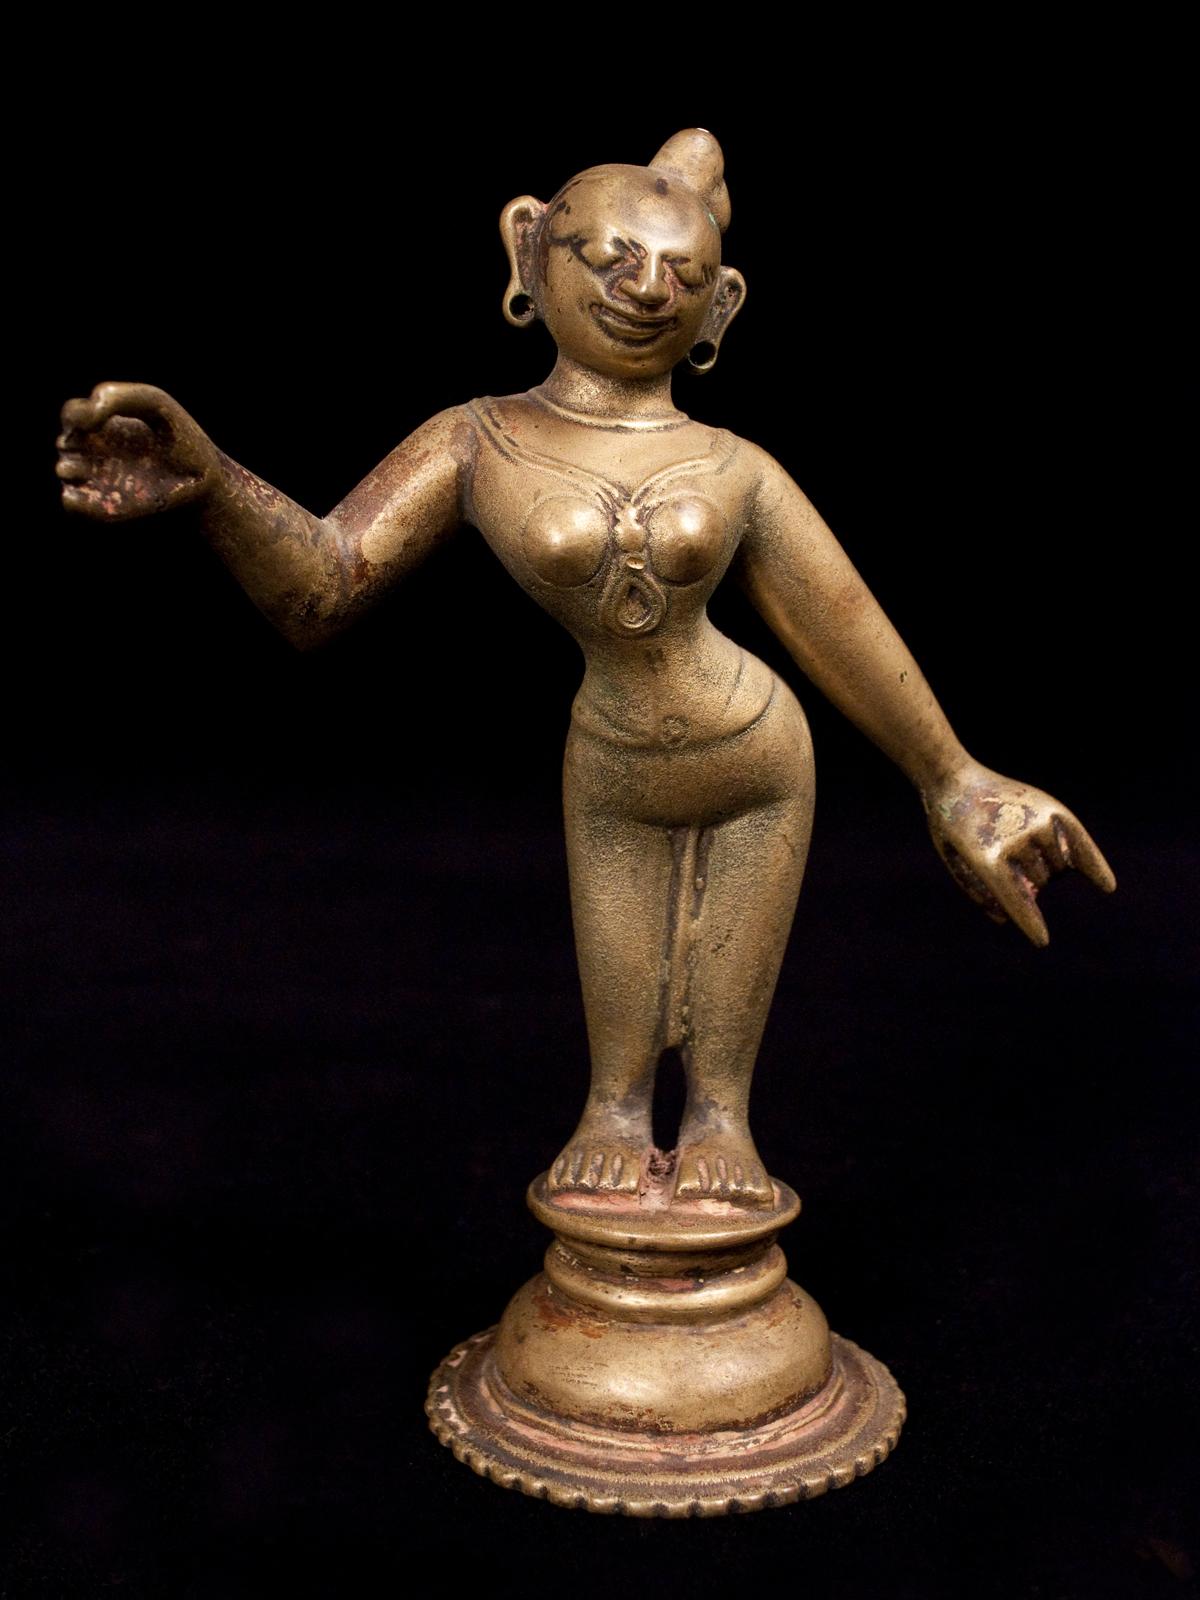 18.-19. Jahrhundert Wachsausschmelzguss Bronze Radha, Frau von Krishna, Indien

Radha war eine der Gopis (Milchmädchen oder Kuhhirten), mit denen Krishna als Kind spielte und tanzte. Sie entwickelten eine göttliche Liebe und sie wurde sein Liebling.